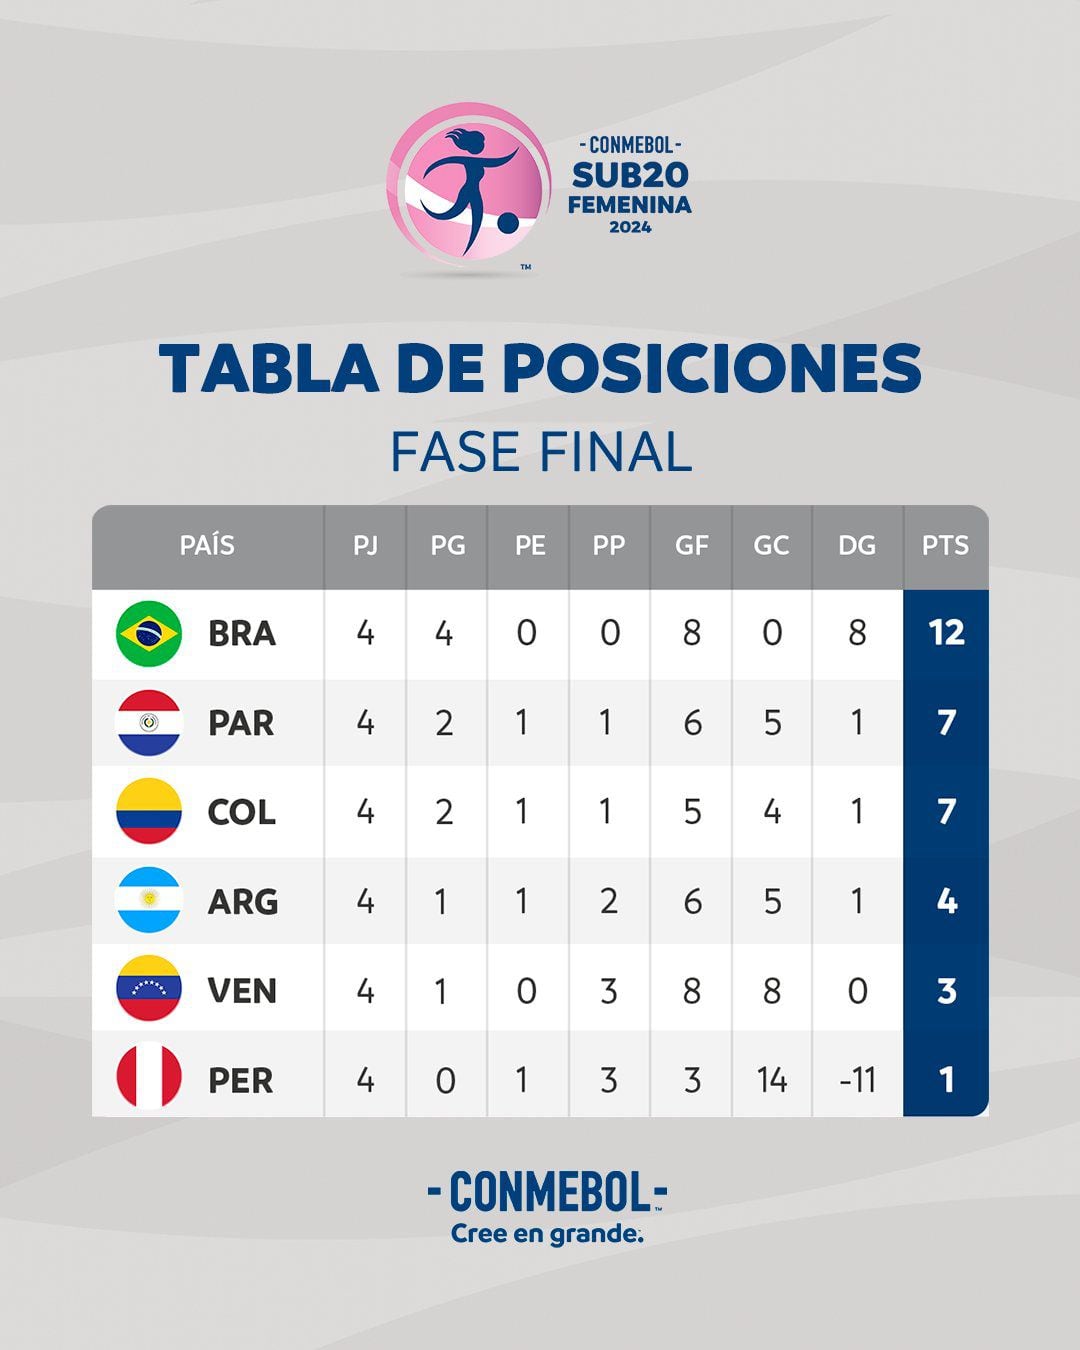 Perú se ubica en el último lugar de la tabla con tan solo un punto.